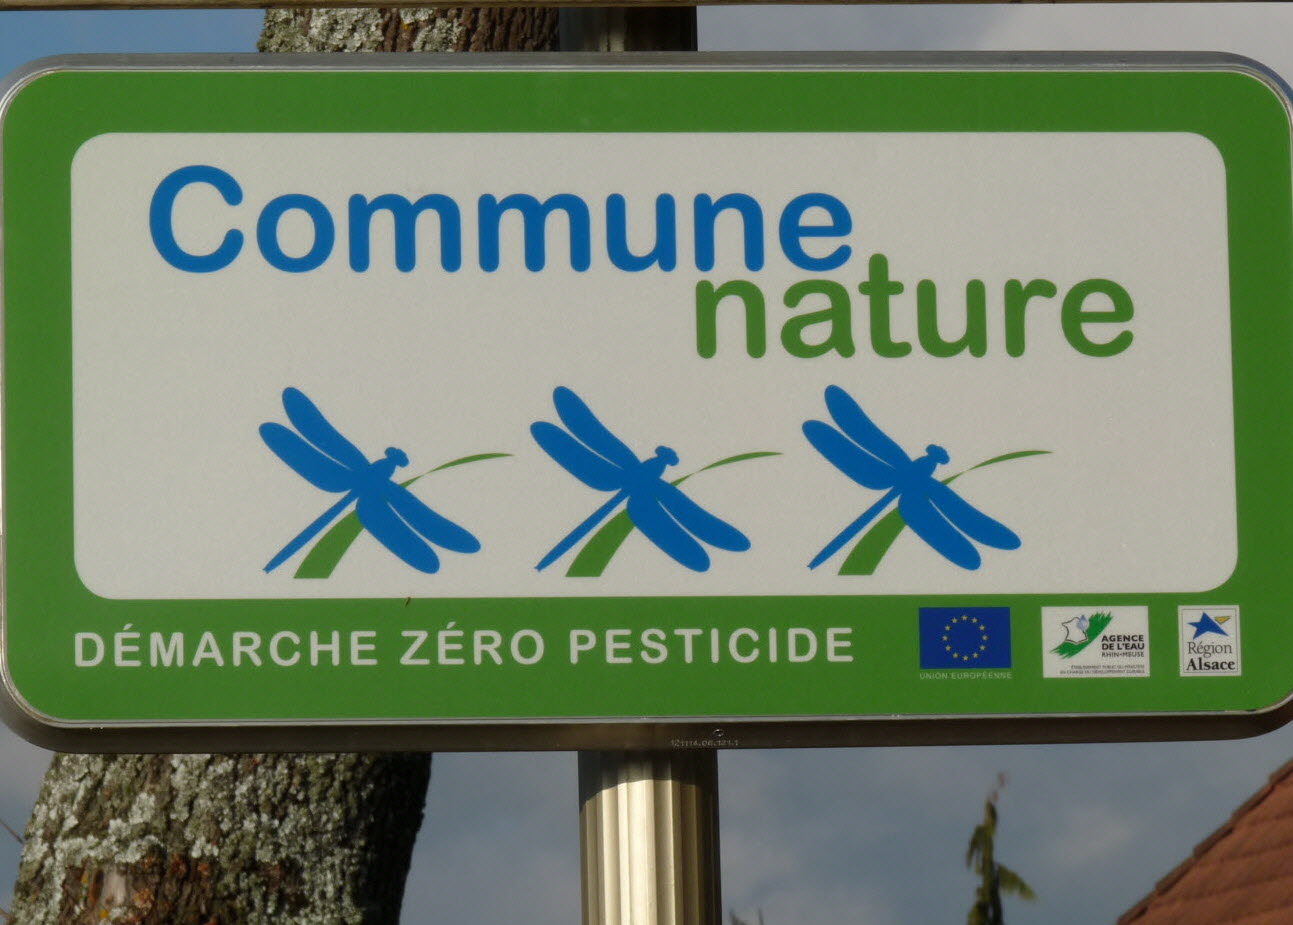 le-panneau-distinguant-les-communes-engagees-dans-la-demarche-zero-pesticide-photo-dna-julien-steinhauser-1596624492.jpg